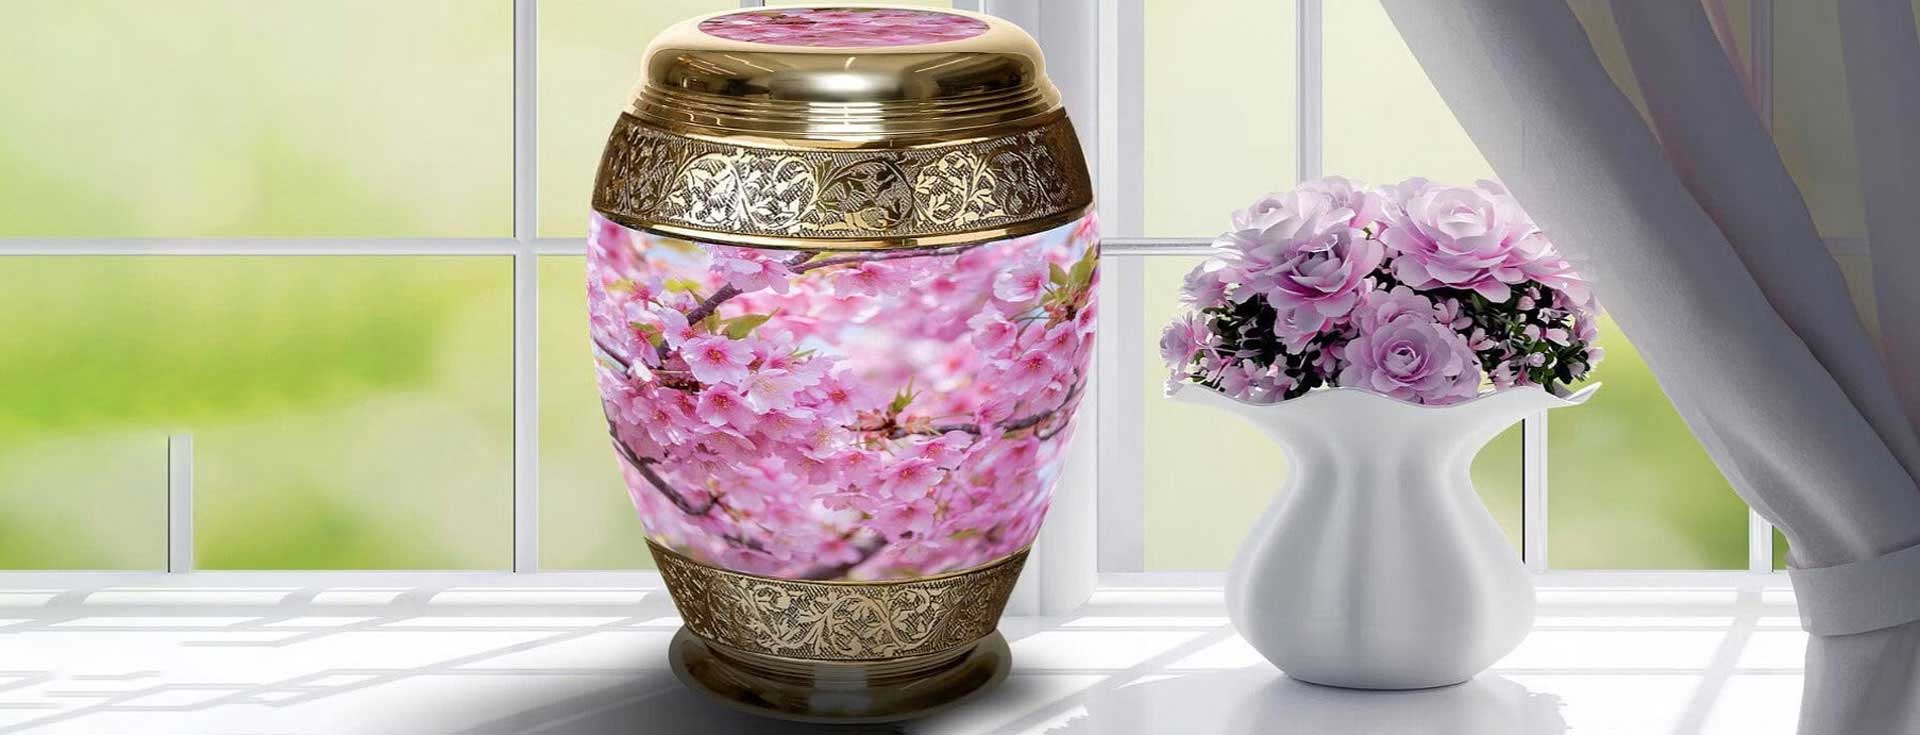 Keepsake Blessing Pearl Lavender Cremation Urn